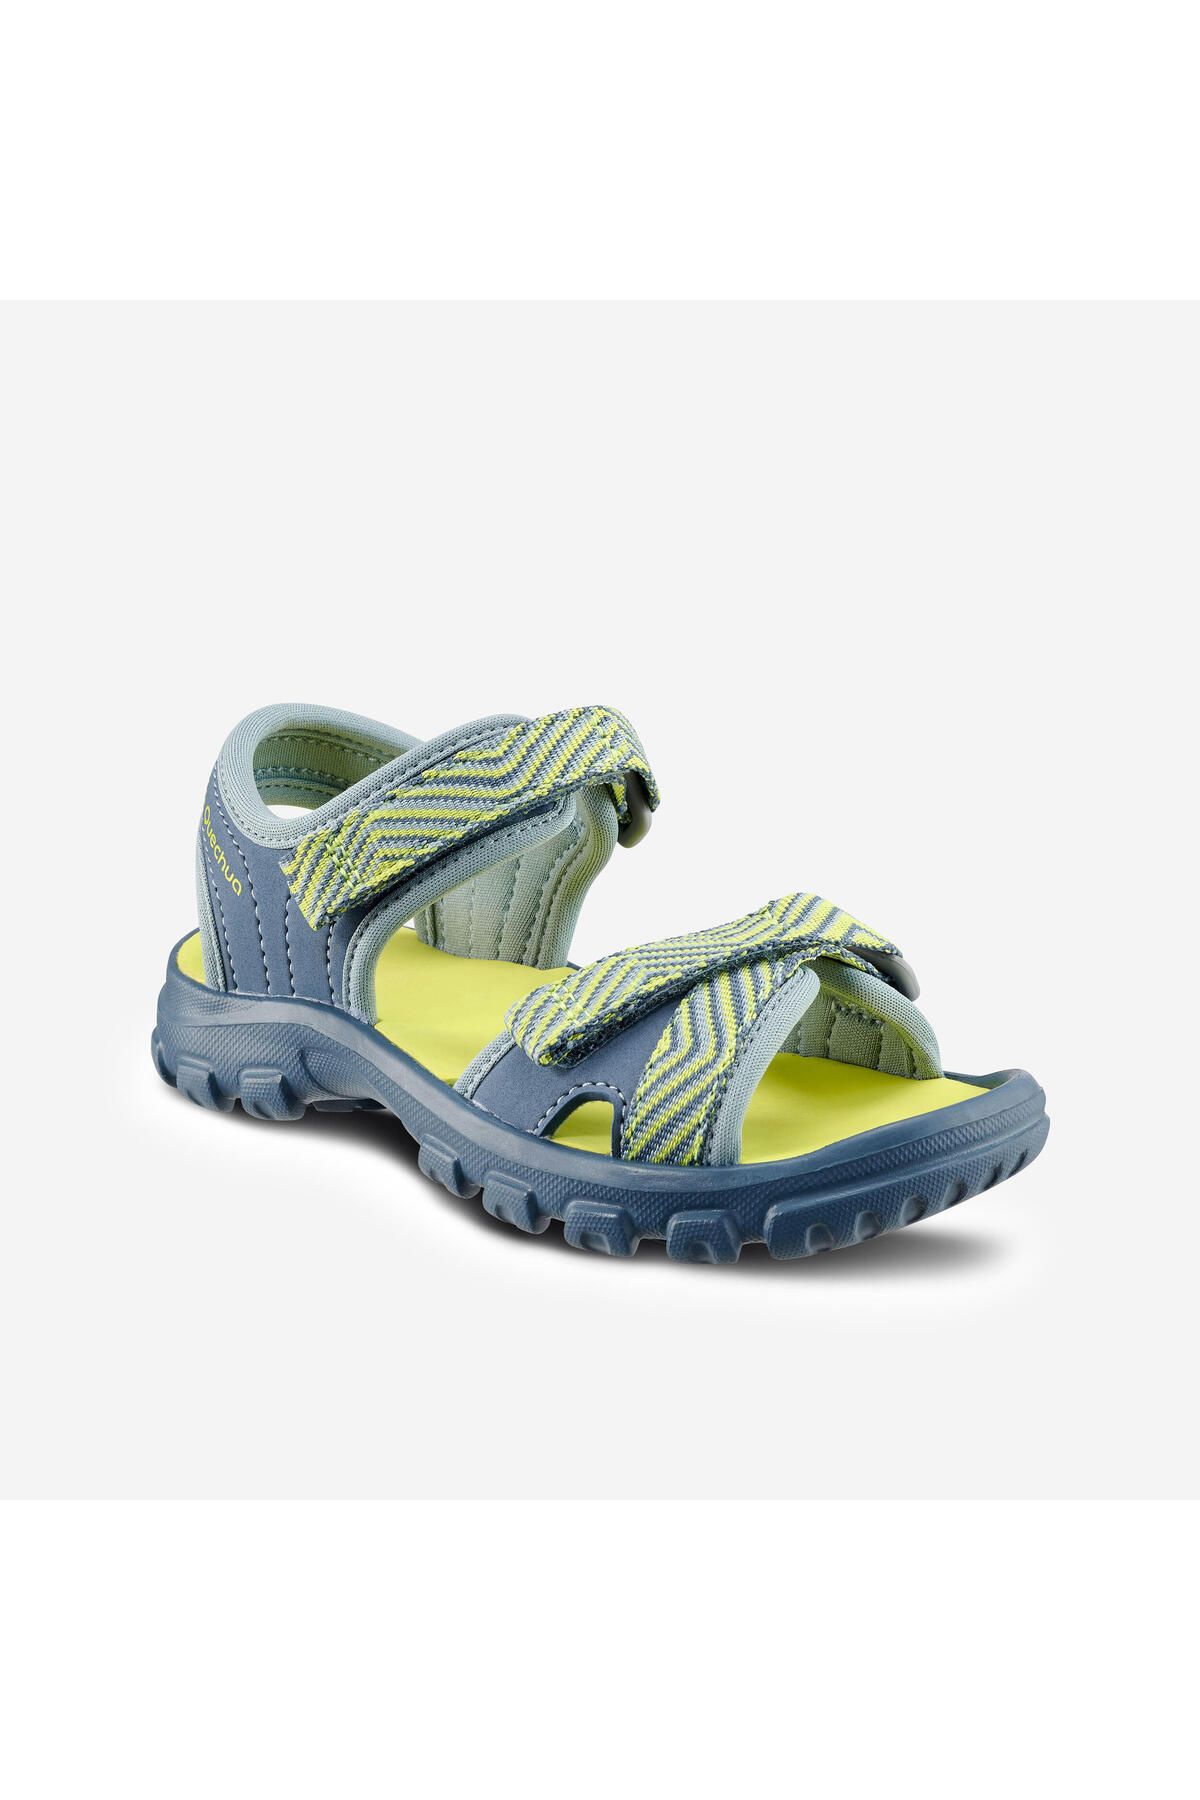 Decathlon Çocuk Sandalet - Mavi - 24 / 31 - Mh100 Kıd